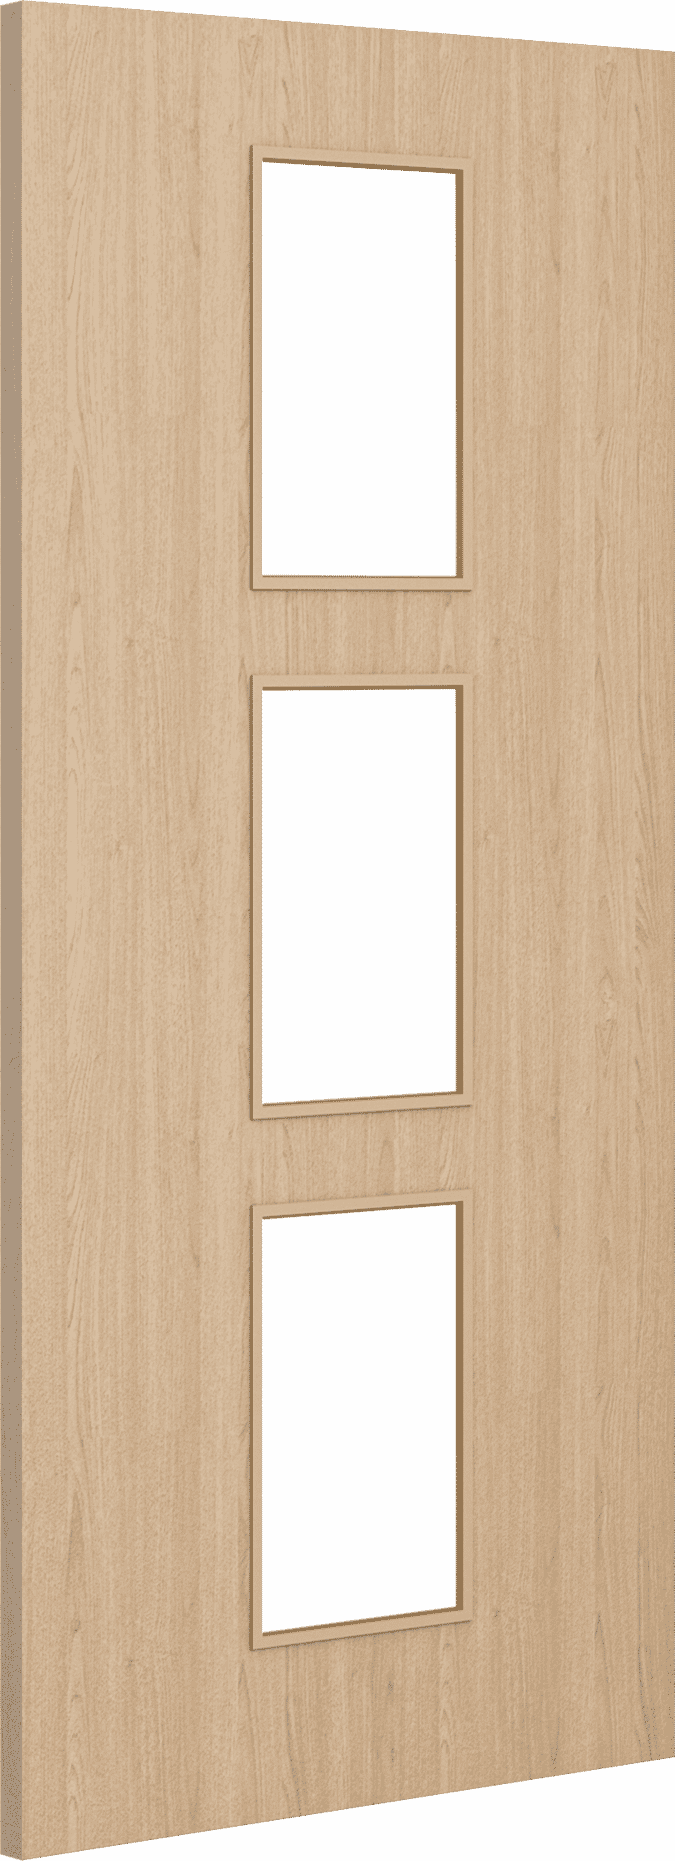 2040mm x 726mm x 44mm Architectural Oak 11 Clear Glazed - Prefinished FD30 Fire Door Blank